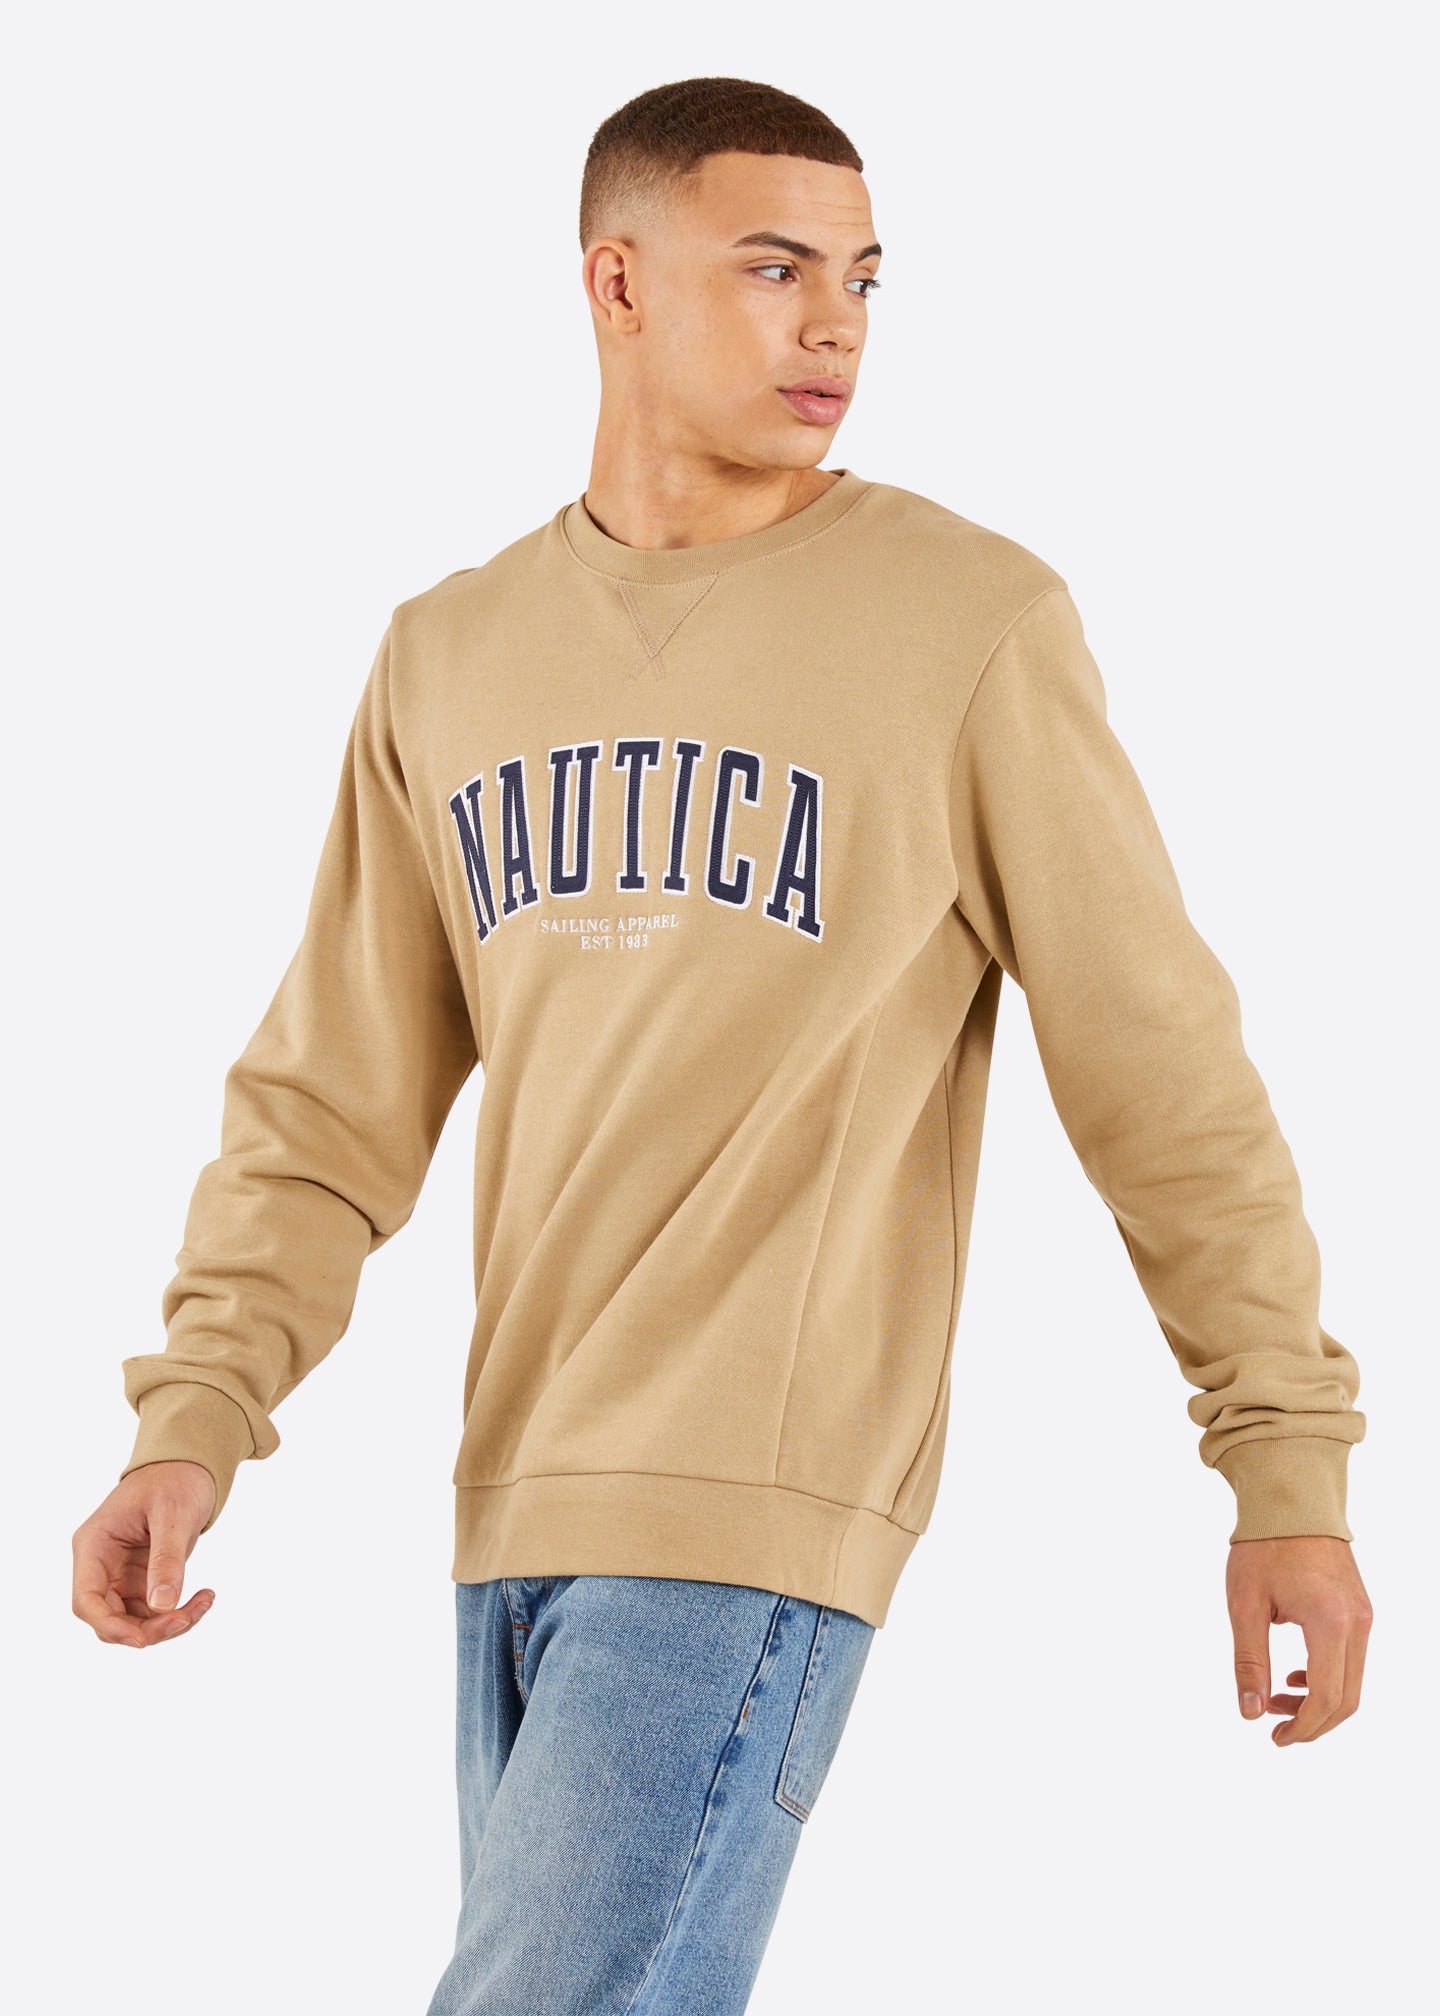 Nautica Brayden Sweatshirt - Wheat - Front